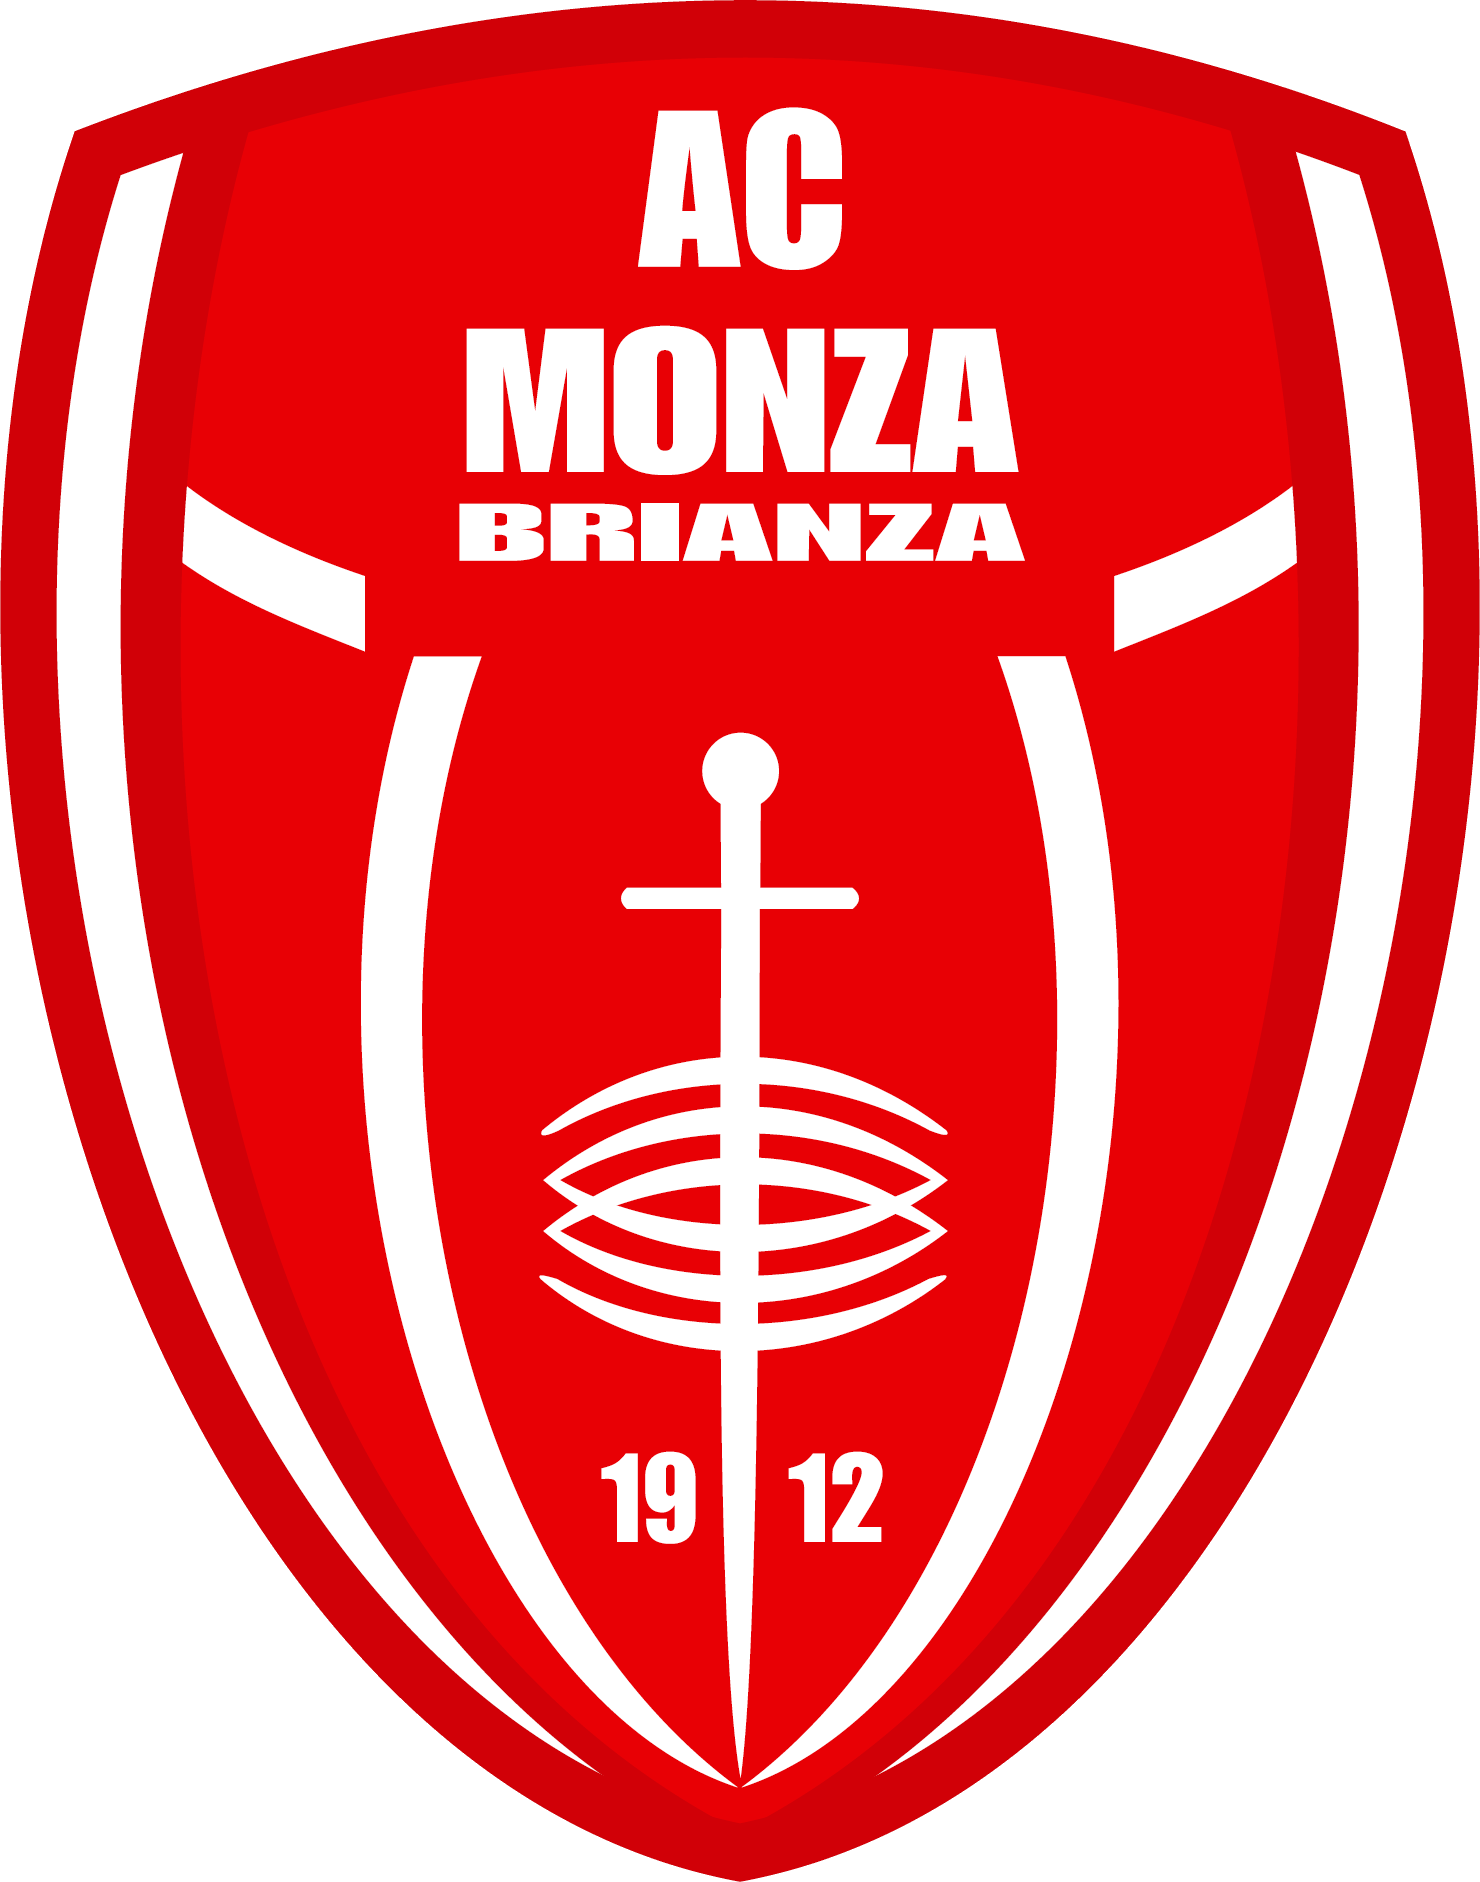 Monza vs Hellas Verona Prediction: The home team is struggling to win this season